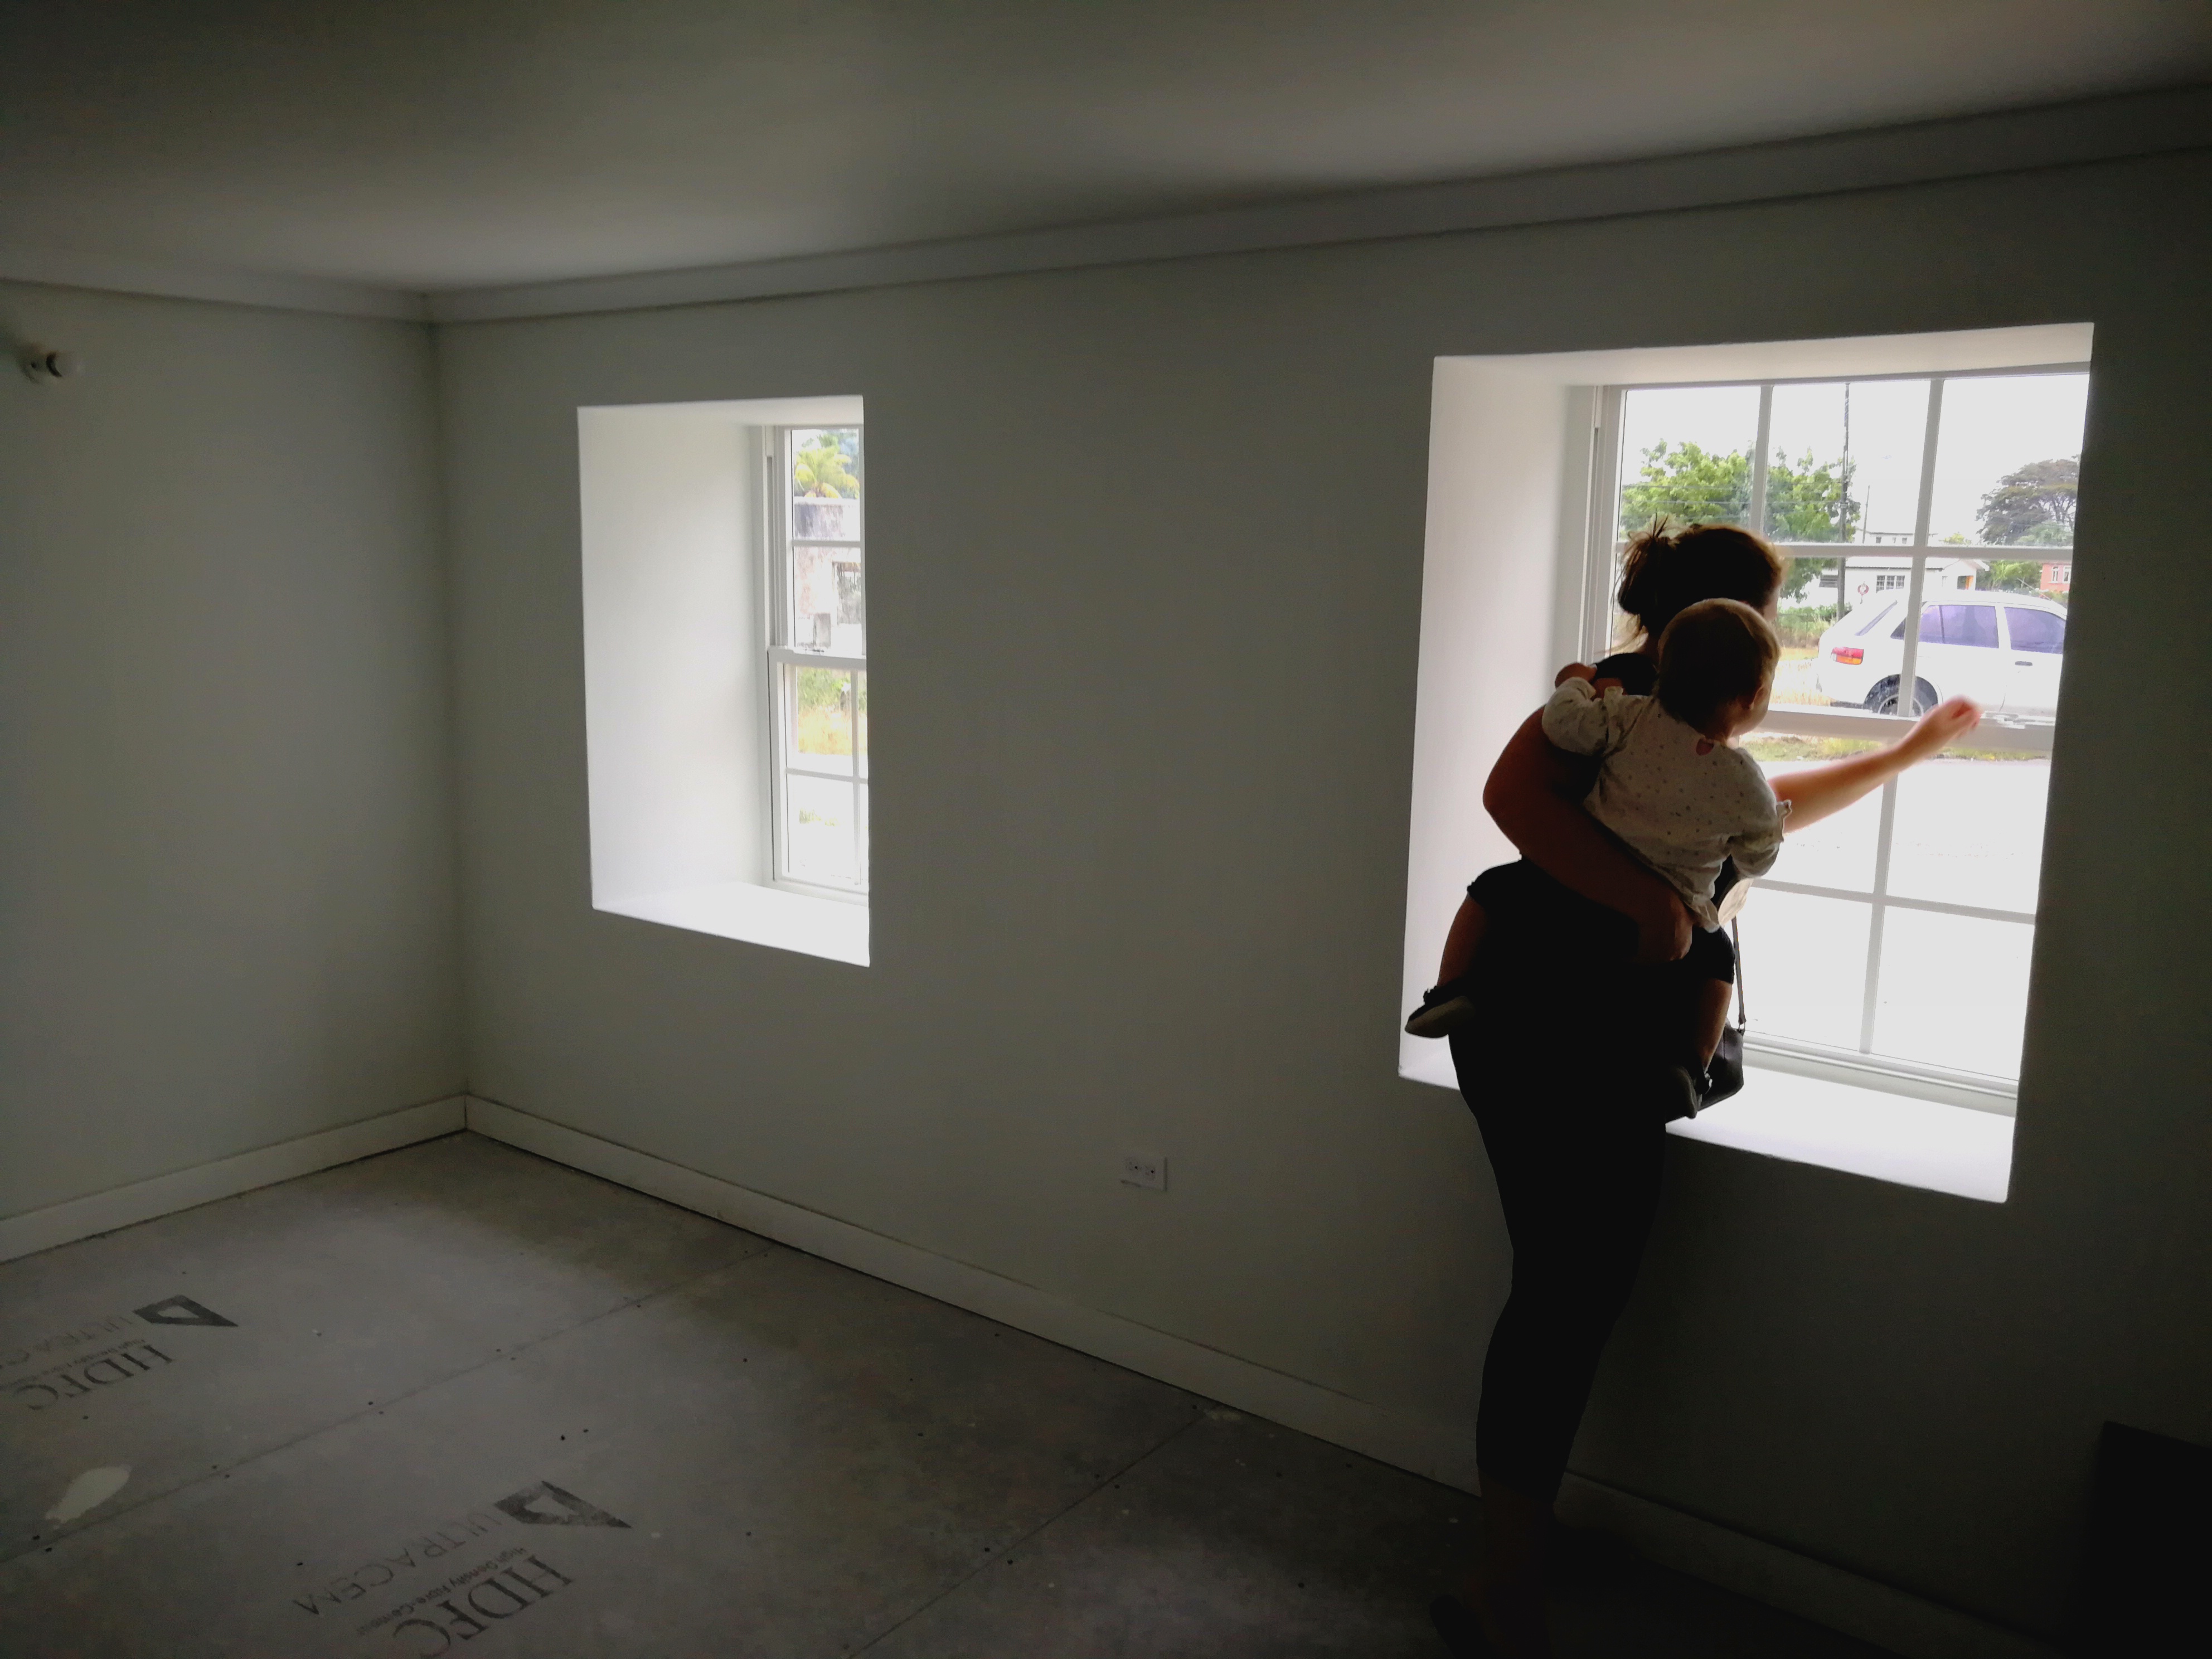 Apt 1 - Living Room Habitable - Jun 2019